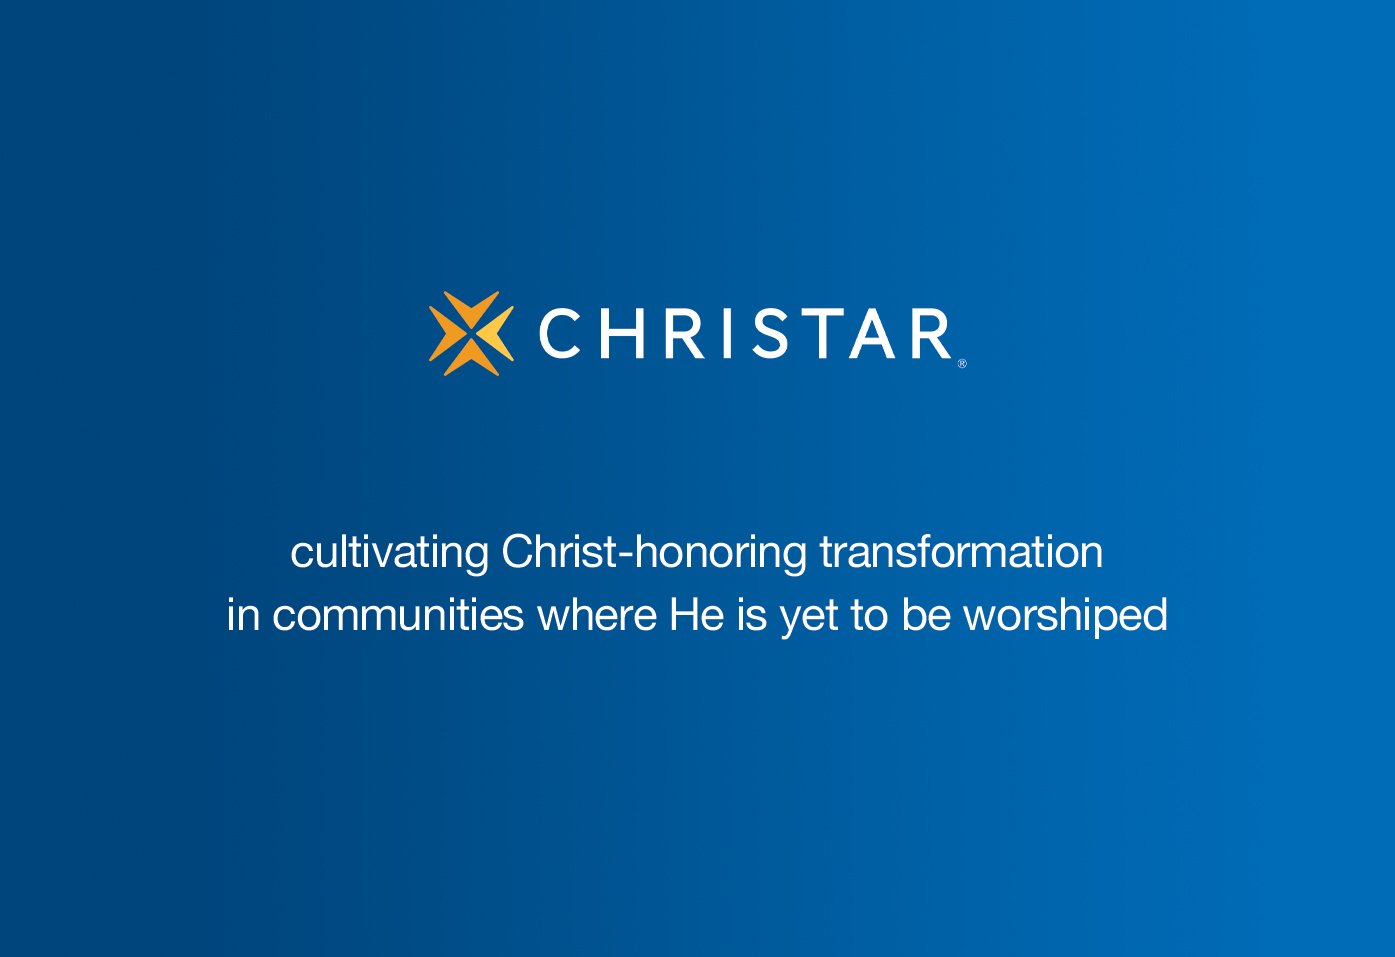 (c) Christar.org